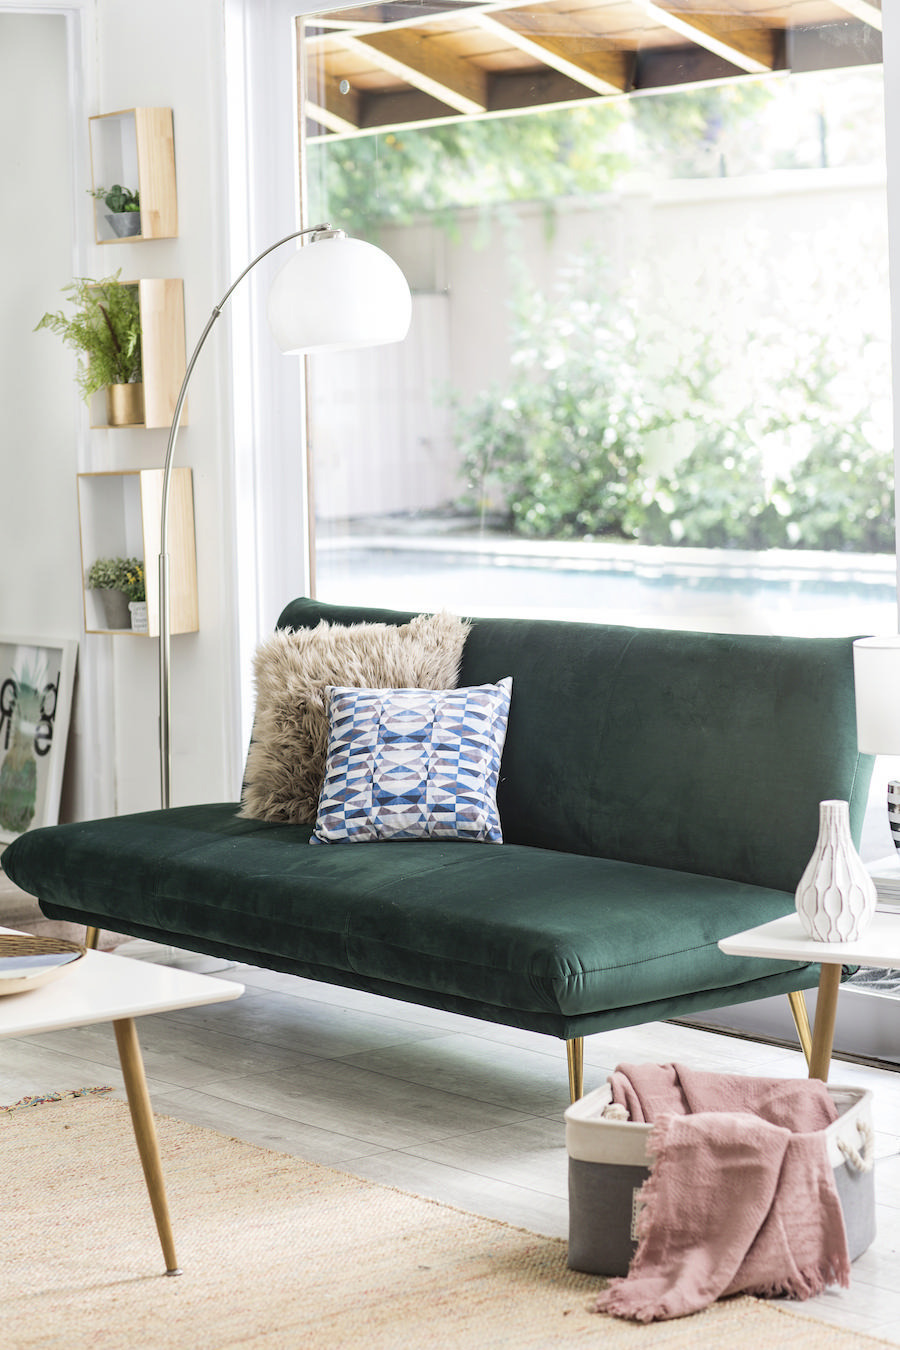 Sofá verde petróleo sin apoyabrazos, decorado con un cojín peludo beige y uno estampado blanco y azul. También hay una lámpara de pie, repisas con plantas pequeñas y una ventana detrás del sofá que mira hacia un patio.